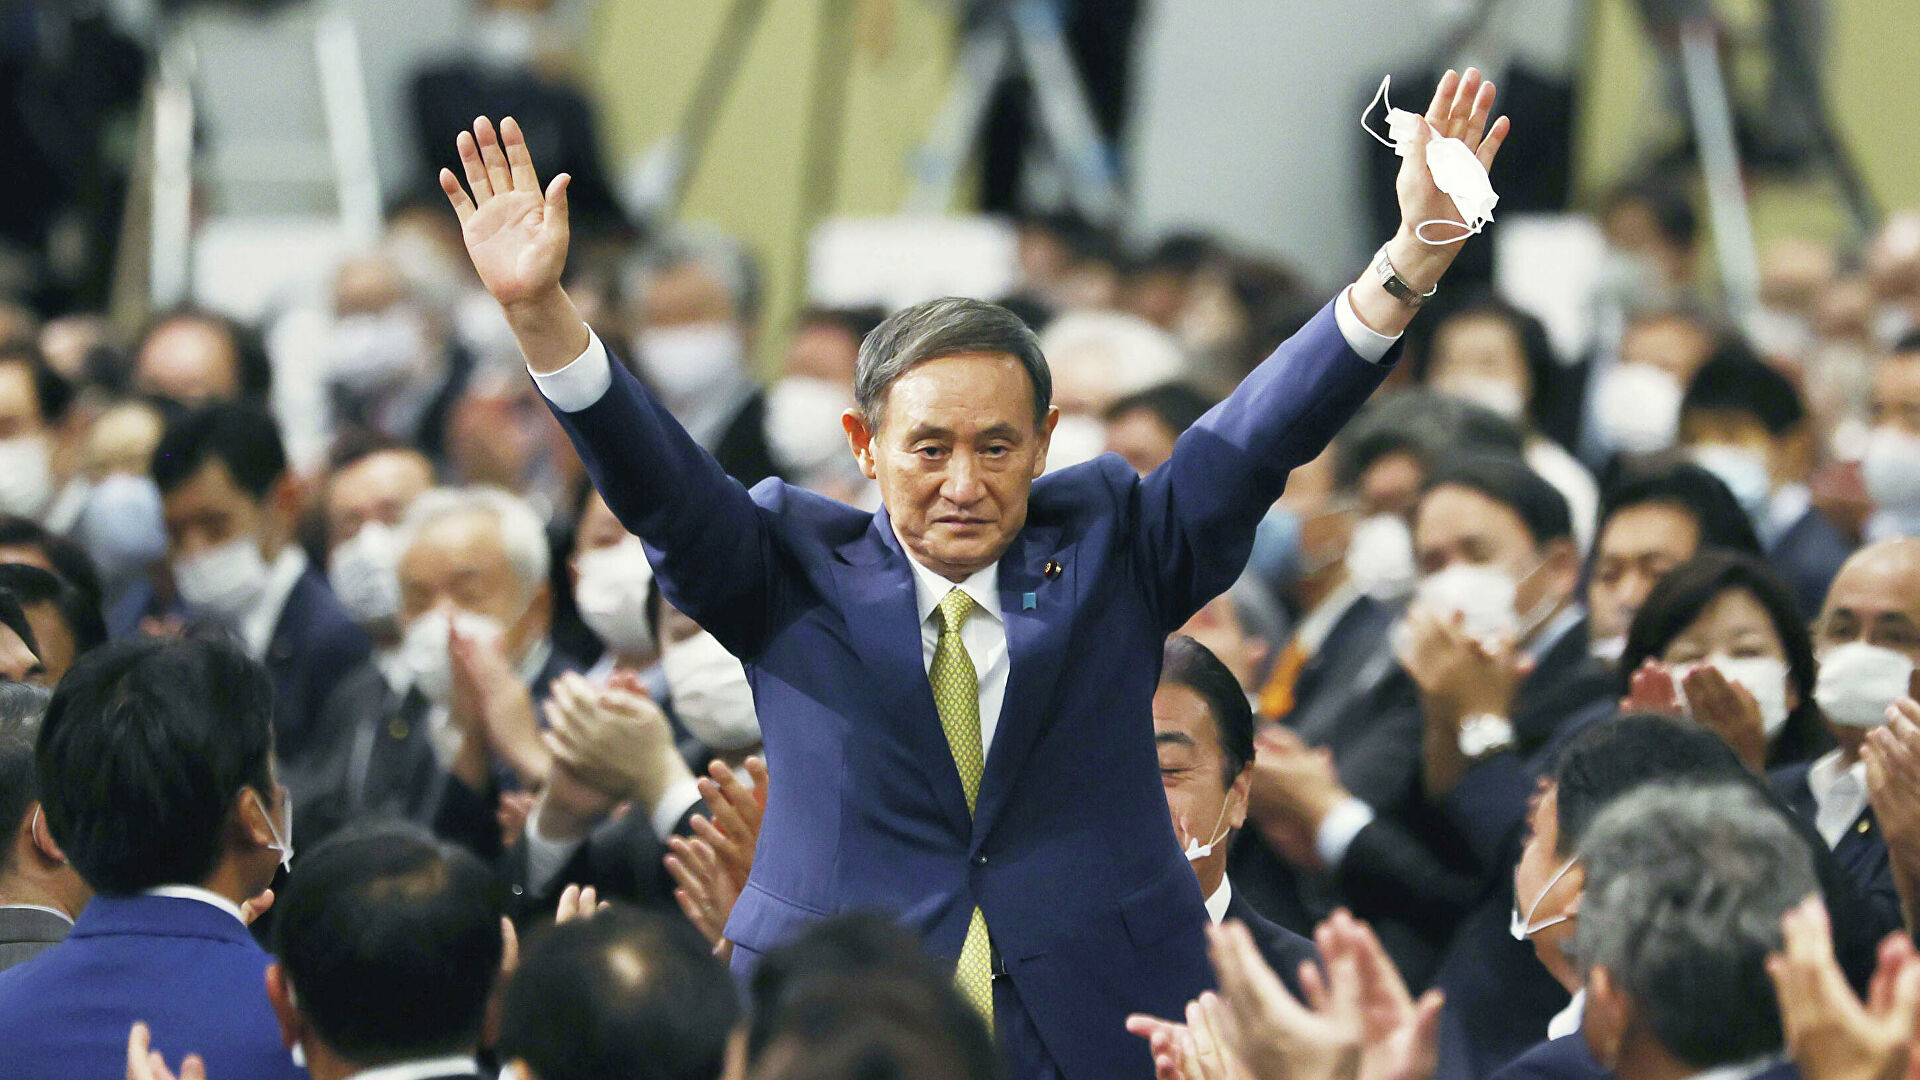 В Японии избран новый премьер-министр